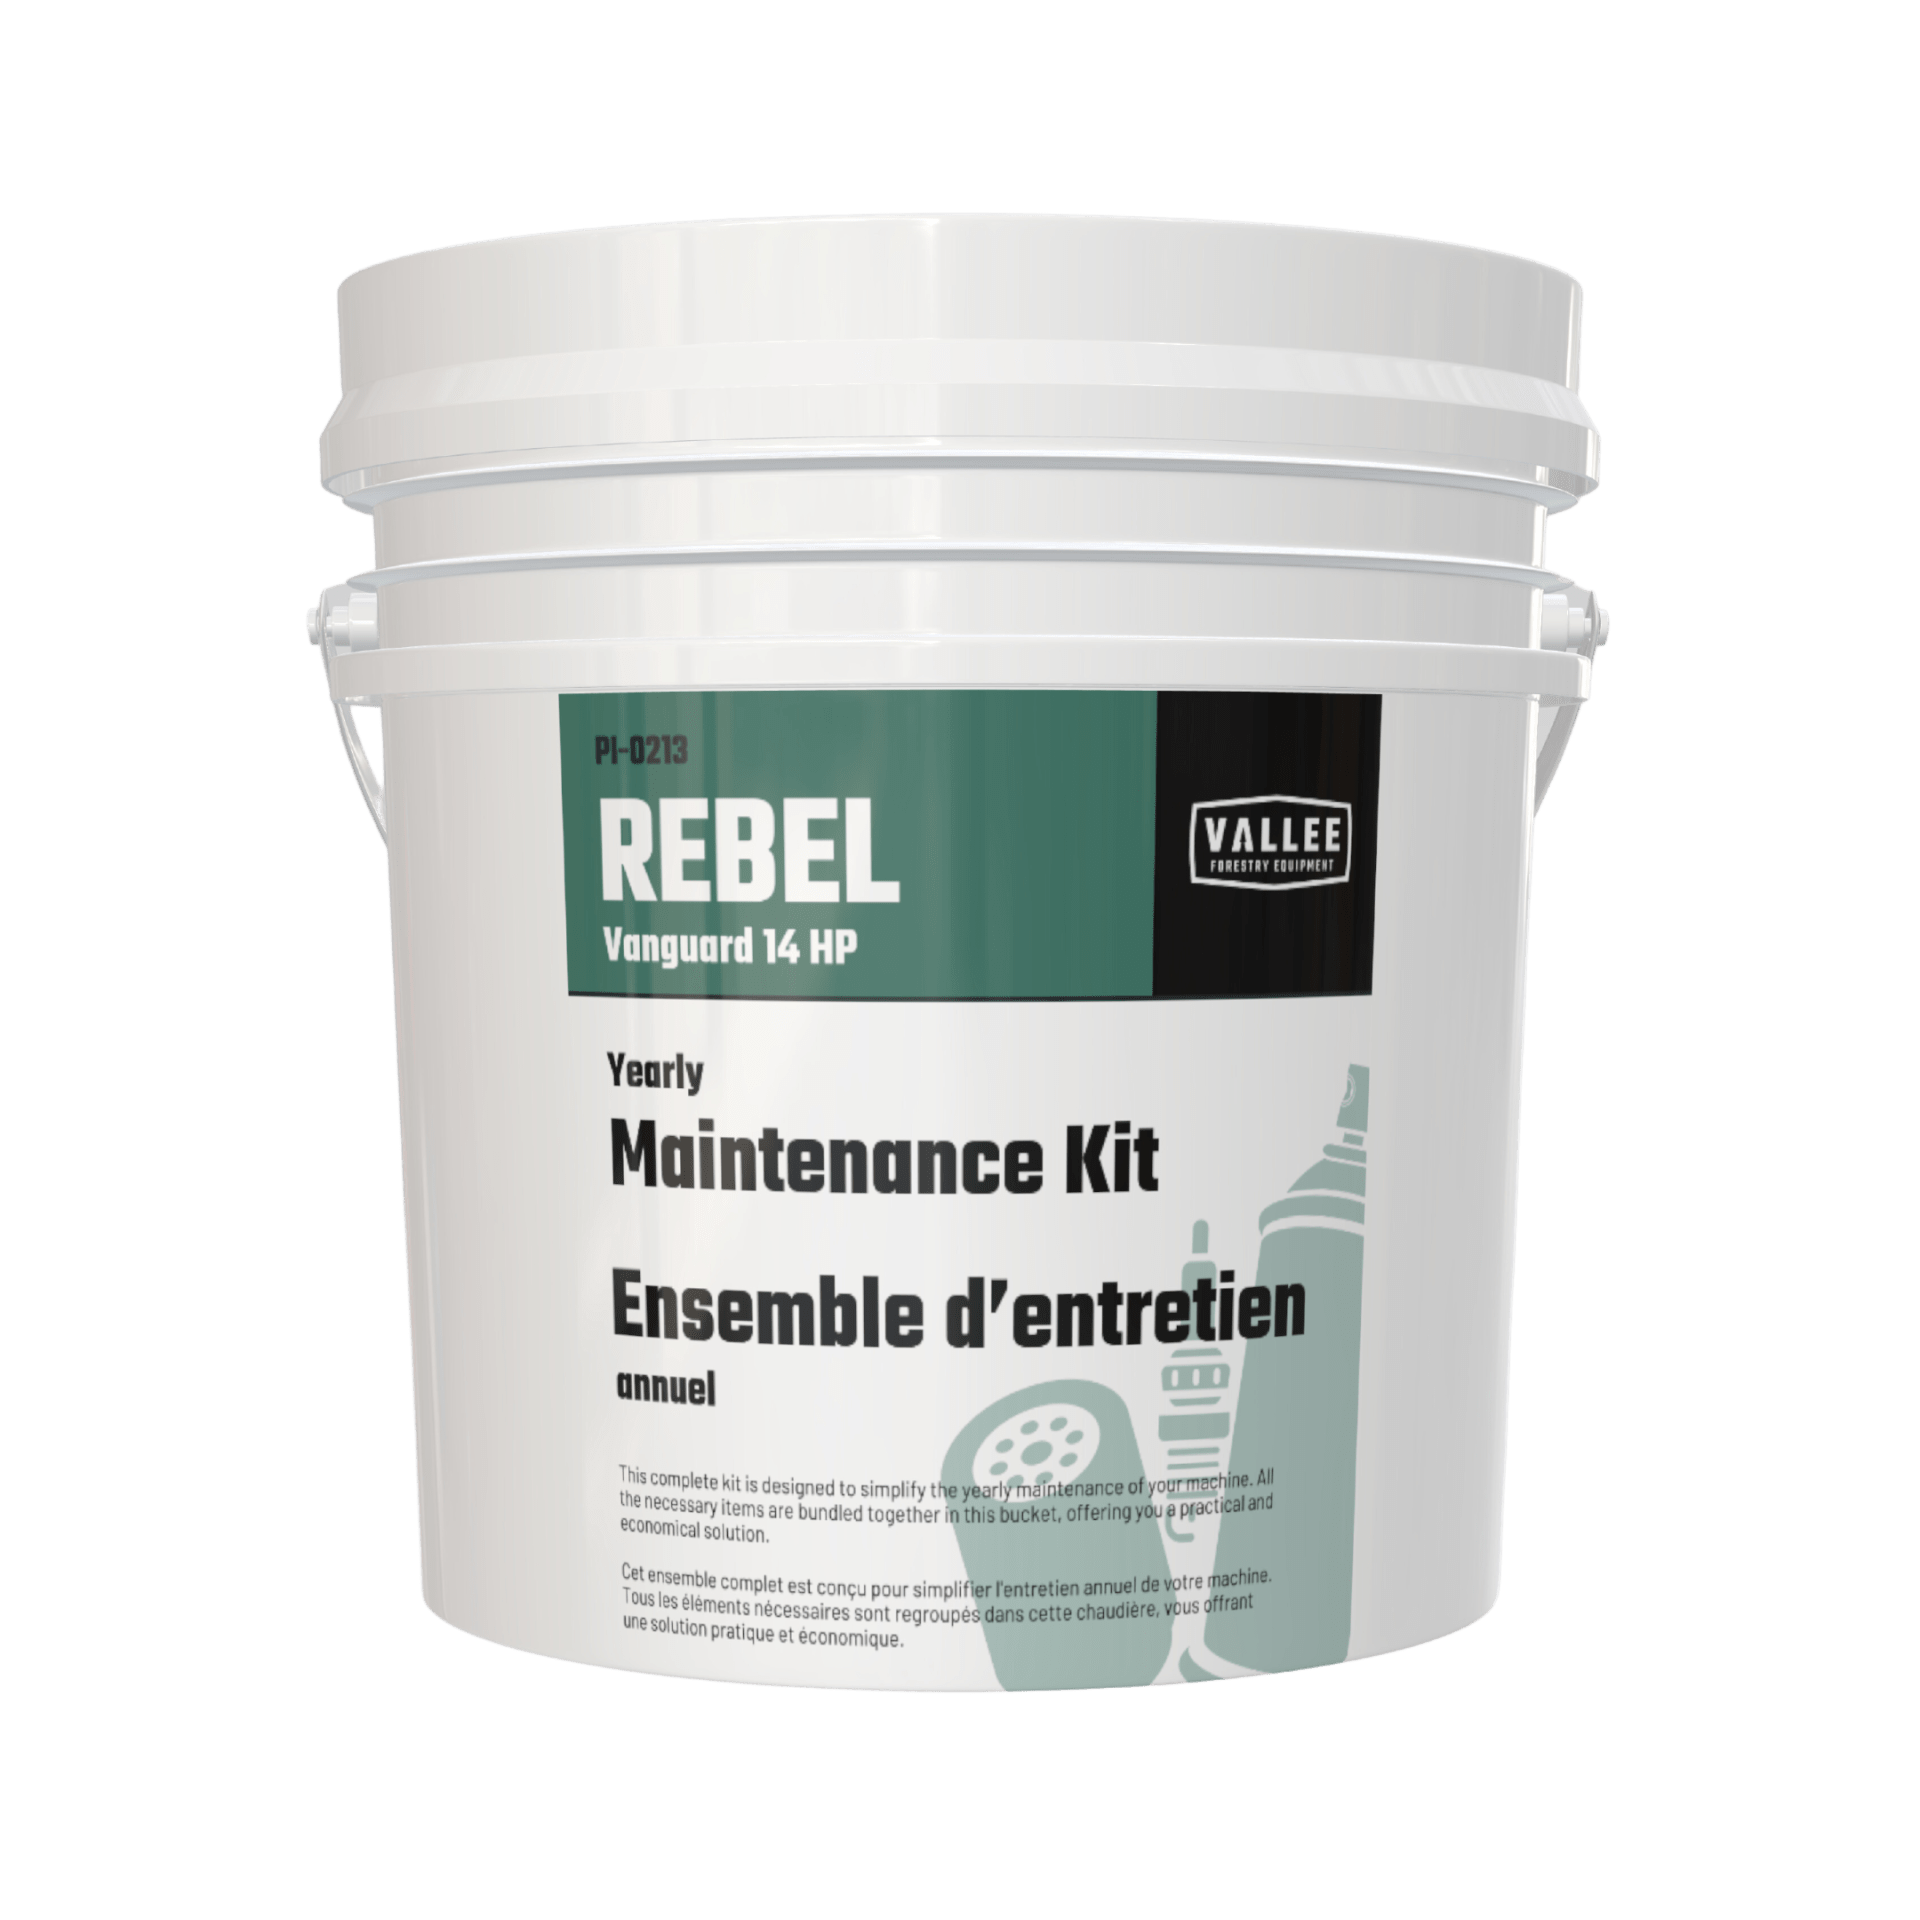 Maintenance Kit for Rebel 14HP